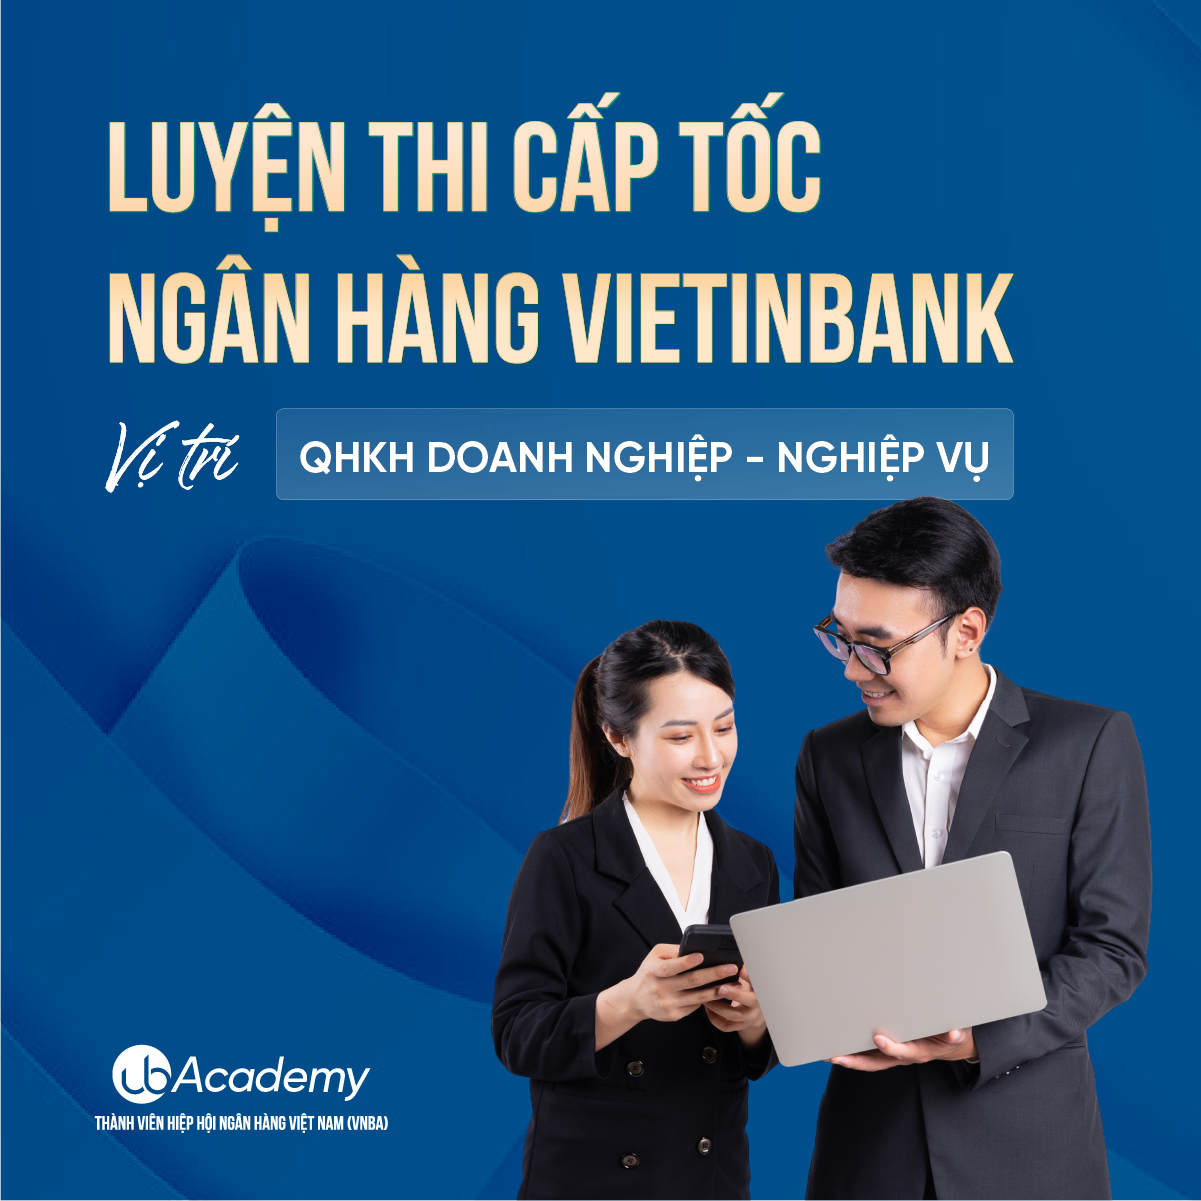 (T3) Luyện thi Cấp tốc Ngân hàng VietinBank  - Nghiệp vụ - QHKH Doanh Nghiệp